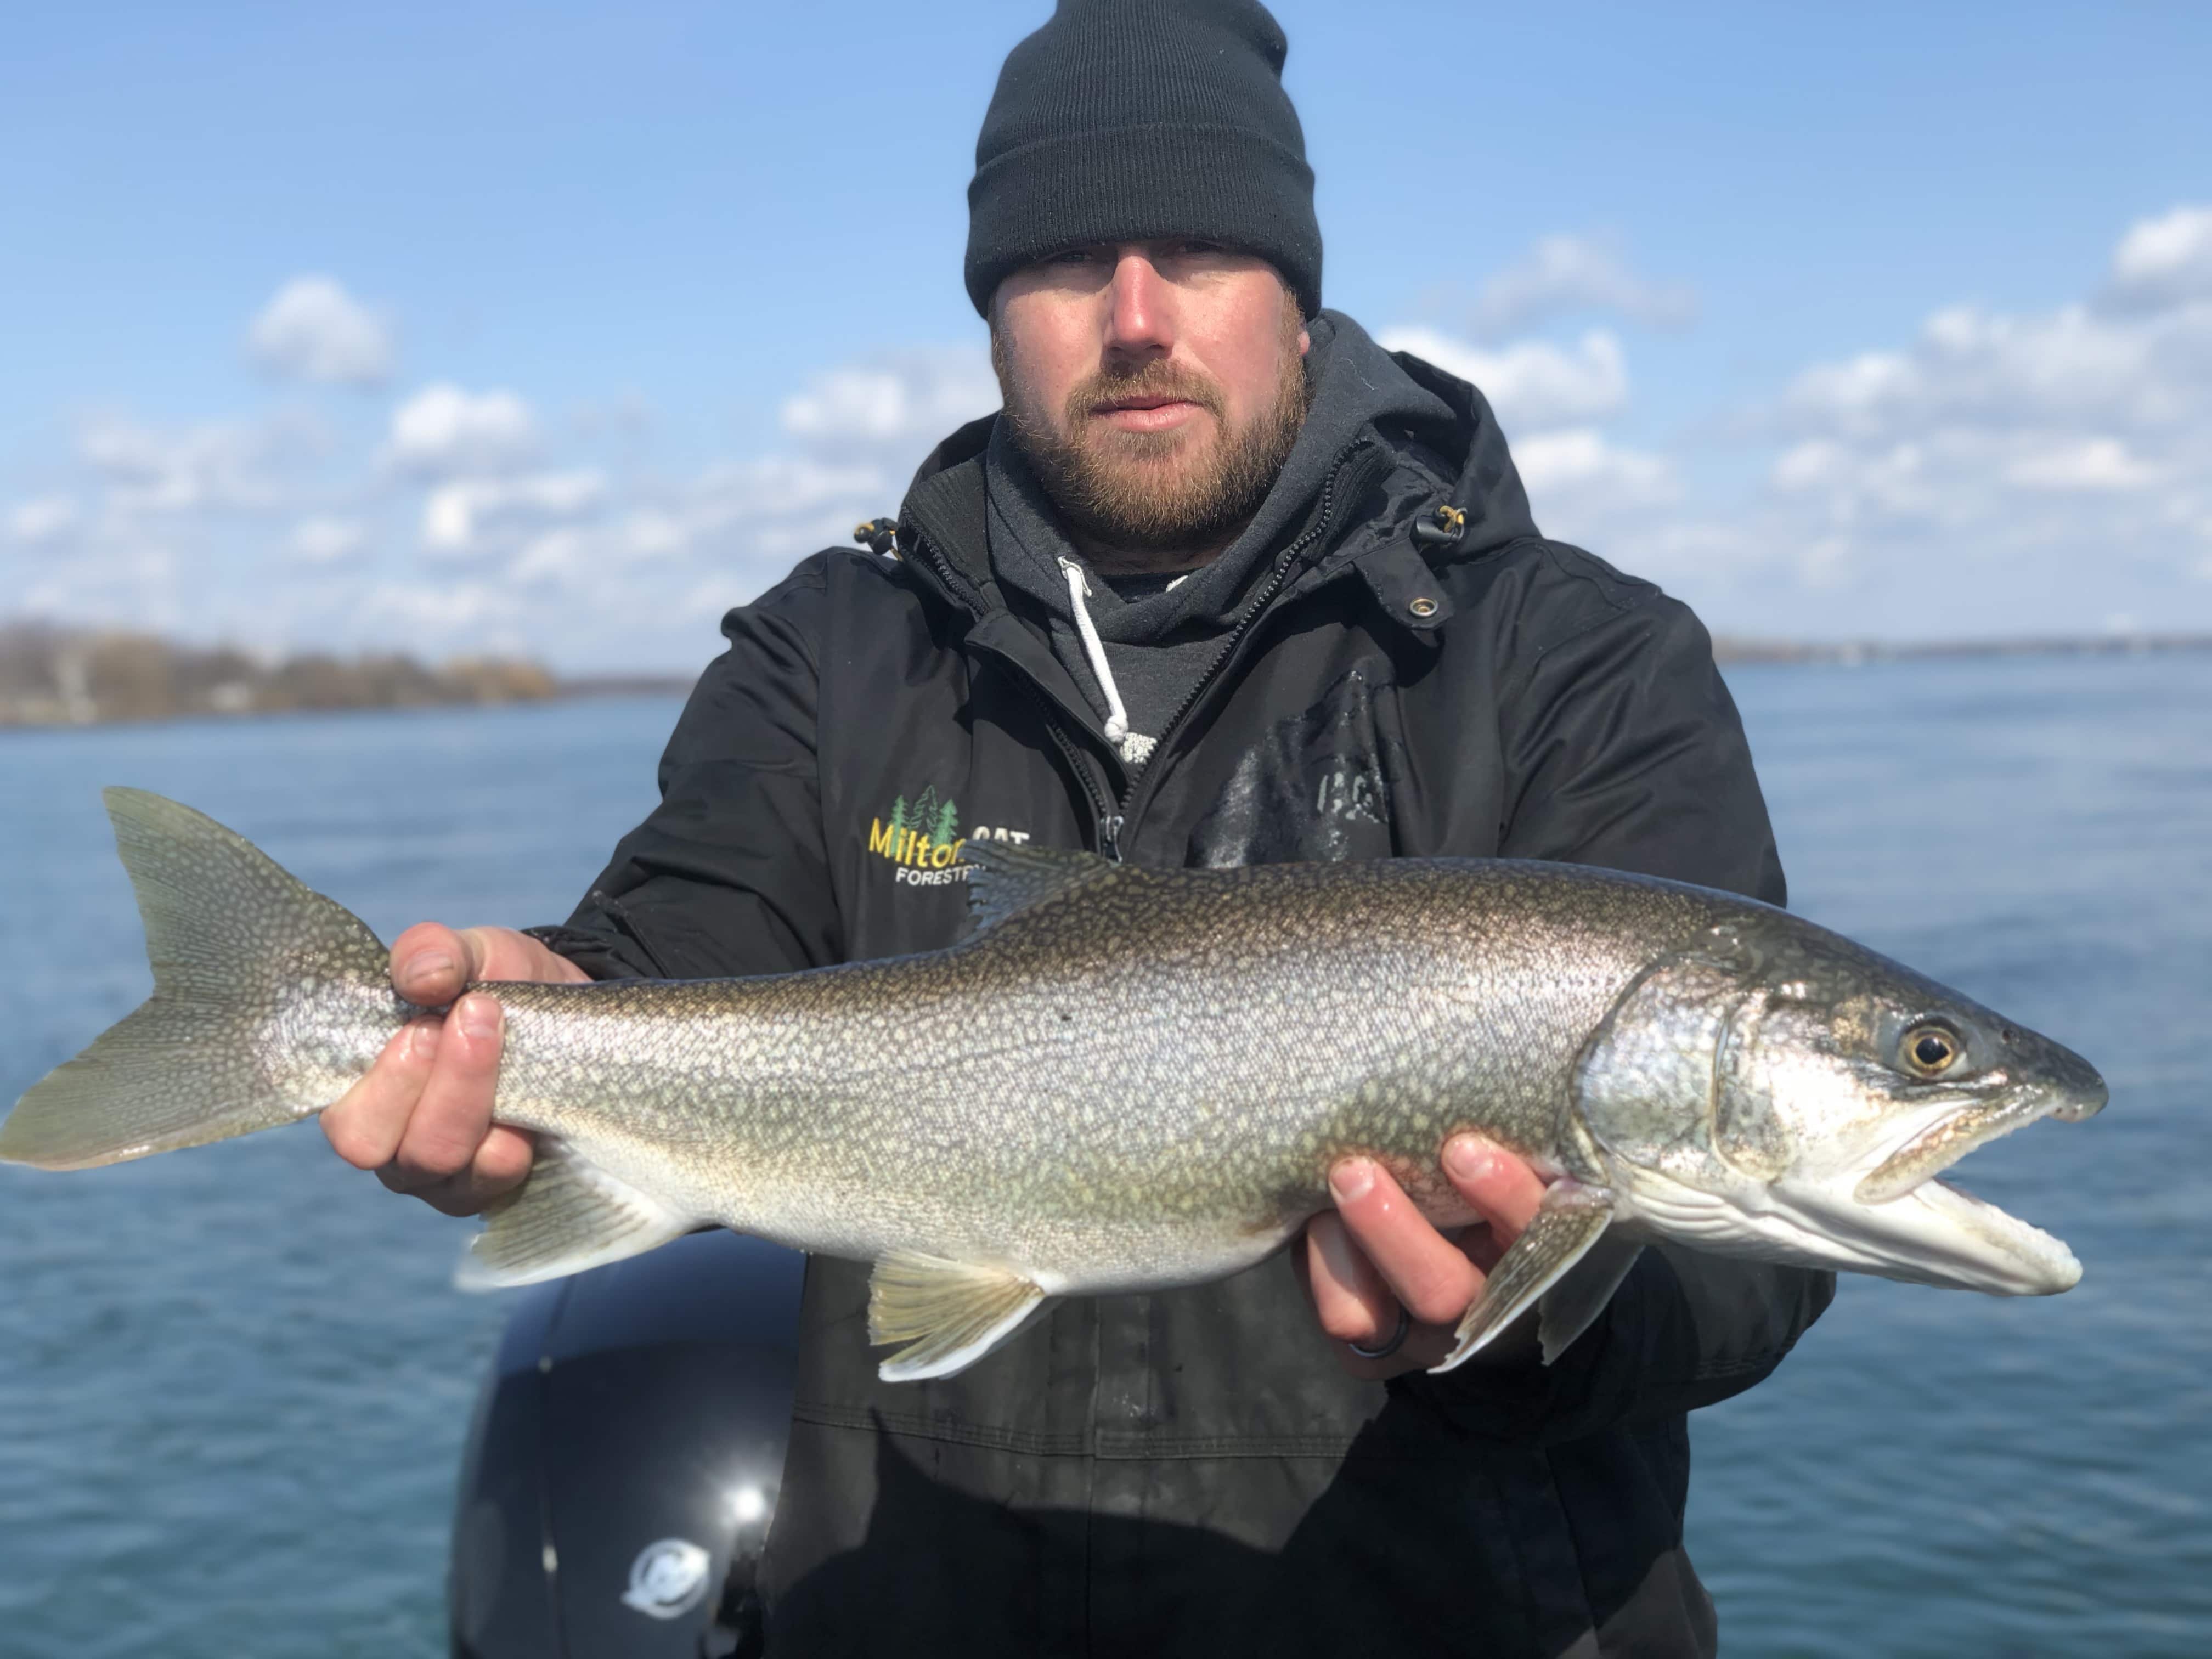 20180402 145155074 iOS - Winter Charter Fishing in Buffalo Niagara